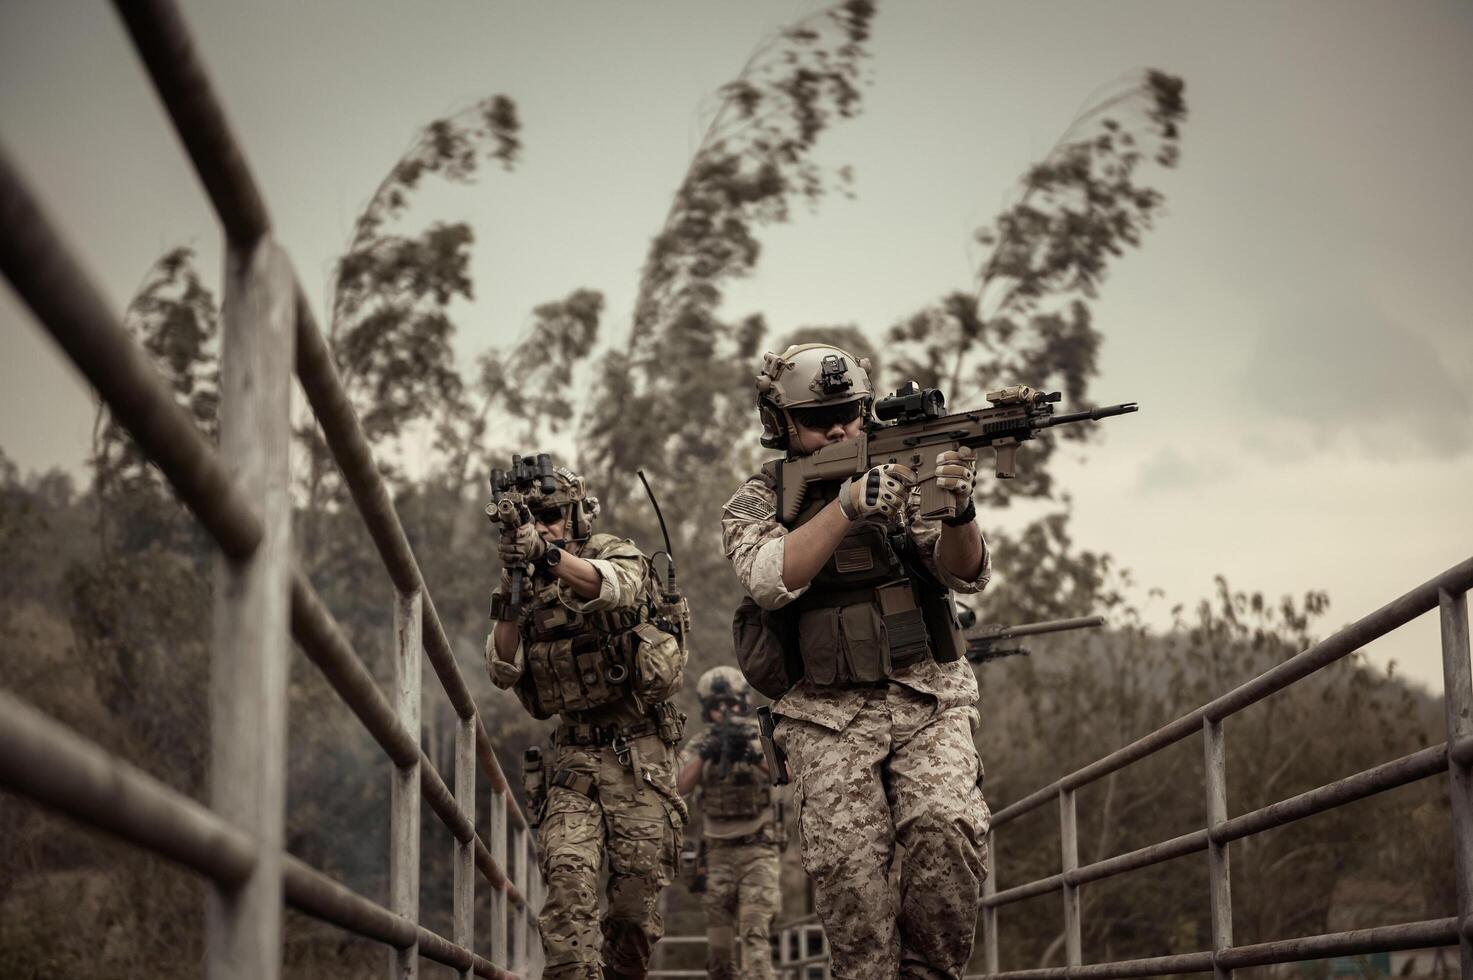 soldaten in camouflage uniformen het richten met hun geweren gereed naar brand gedurende leger operatie in de Woud soldaten opleiding in een leger operatie foto